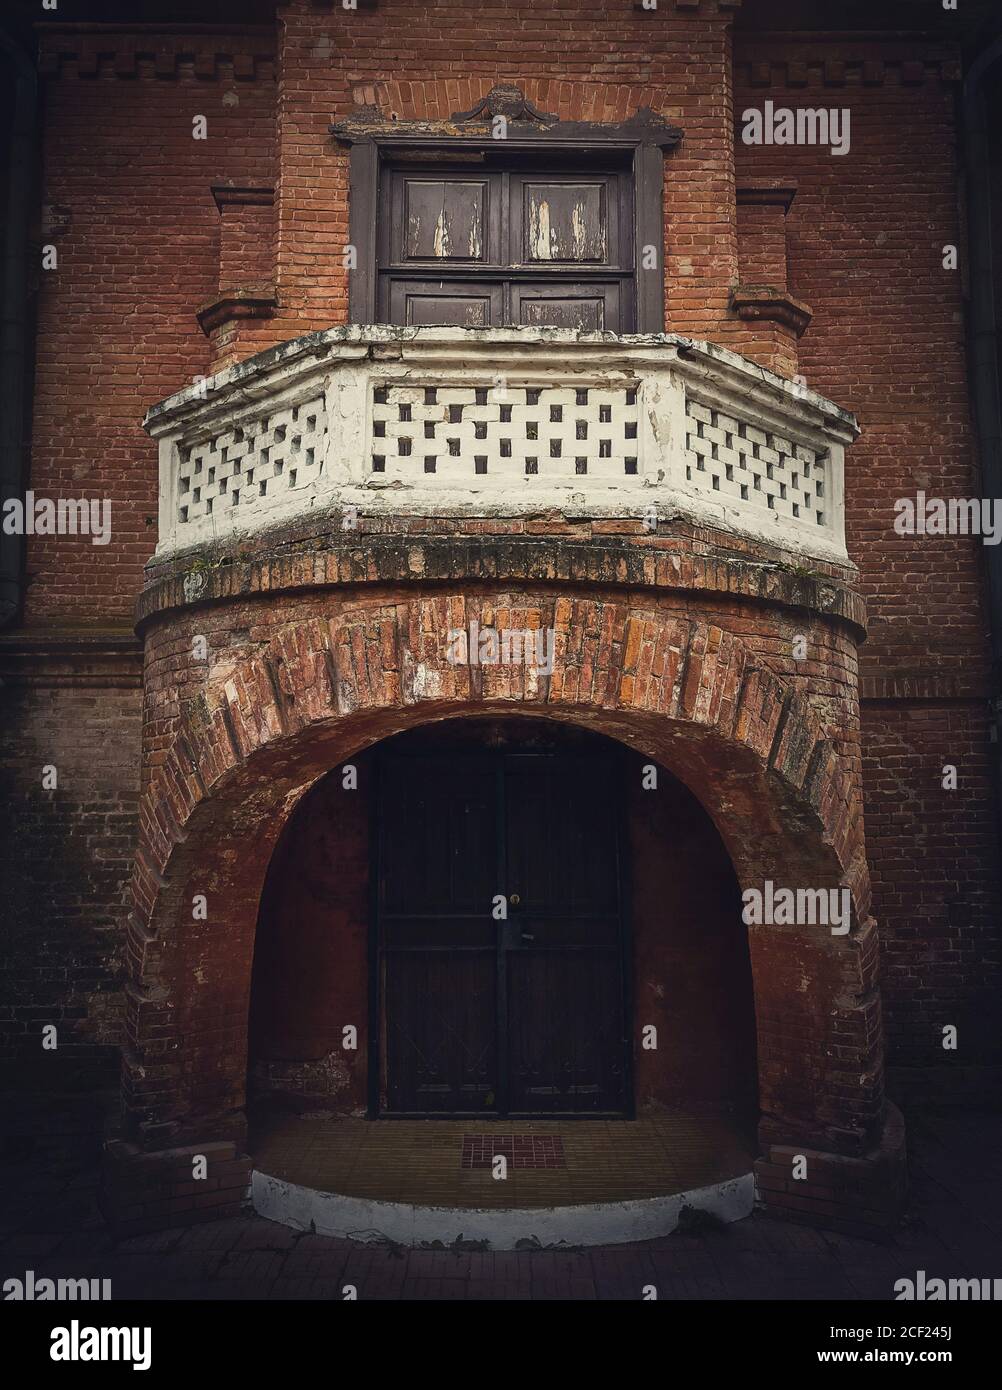 Détails de l'architecture, la porte d'entrée avec le balcon du château de chasse à la maison Manuc BEI, Moldavie. Ancienne façade de bâtiment en briques. Halloween hante Banque D'Images